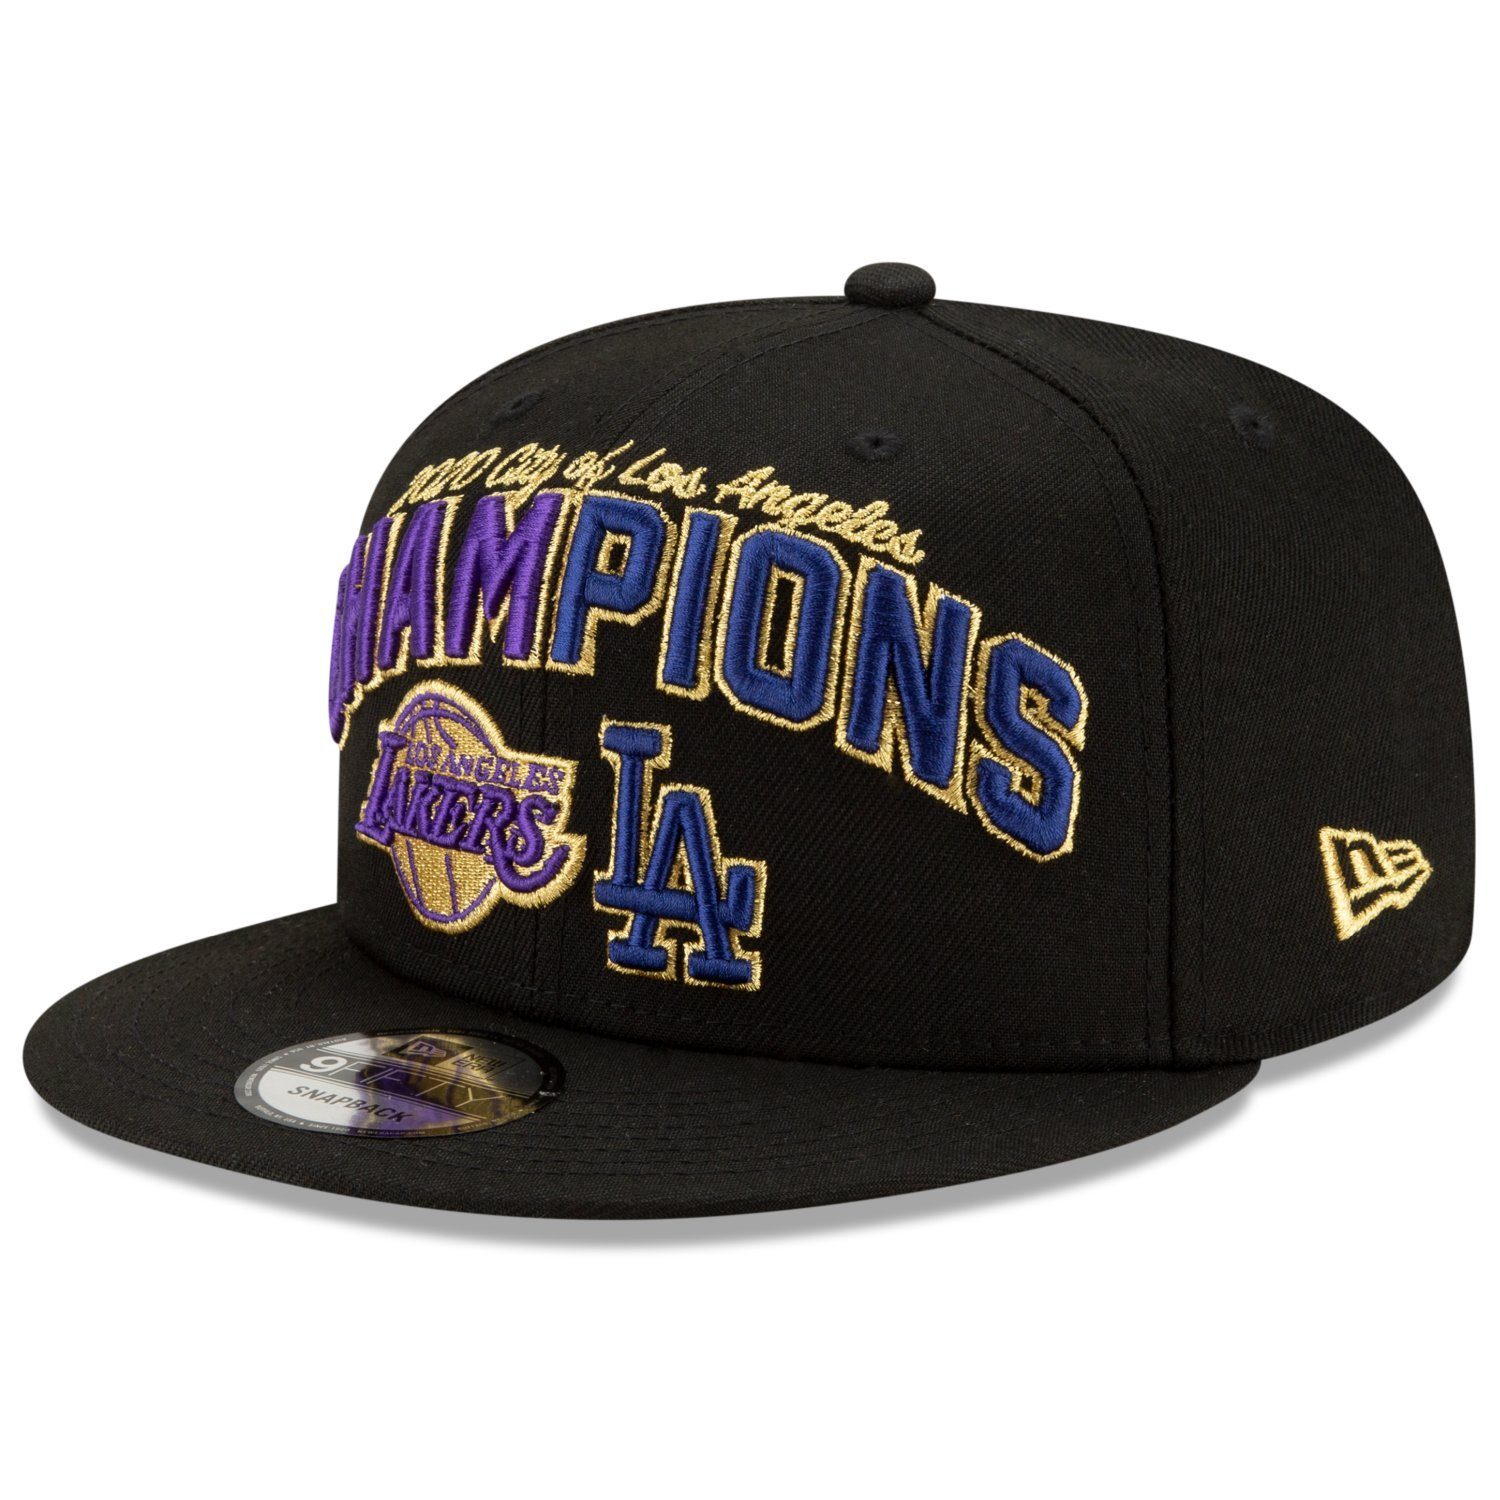 New Era Snapback Cap 9Fifty CHAMPS 2020 LA Lakers & Dodgers